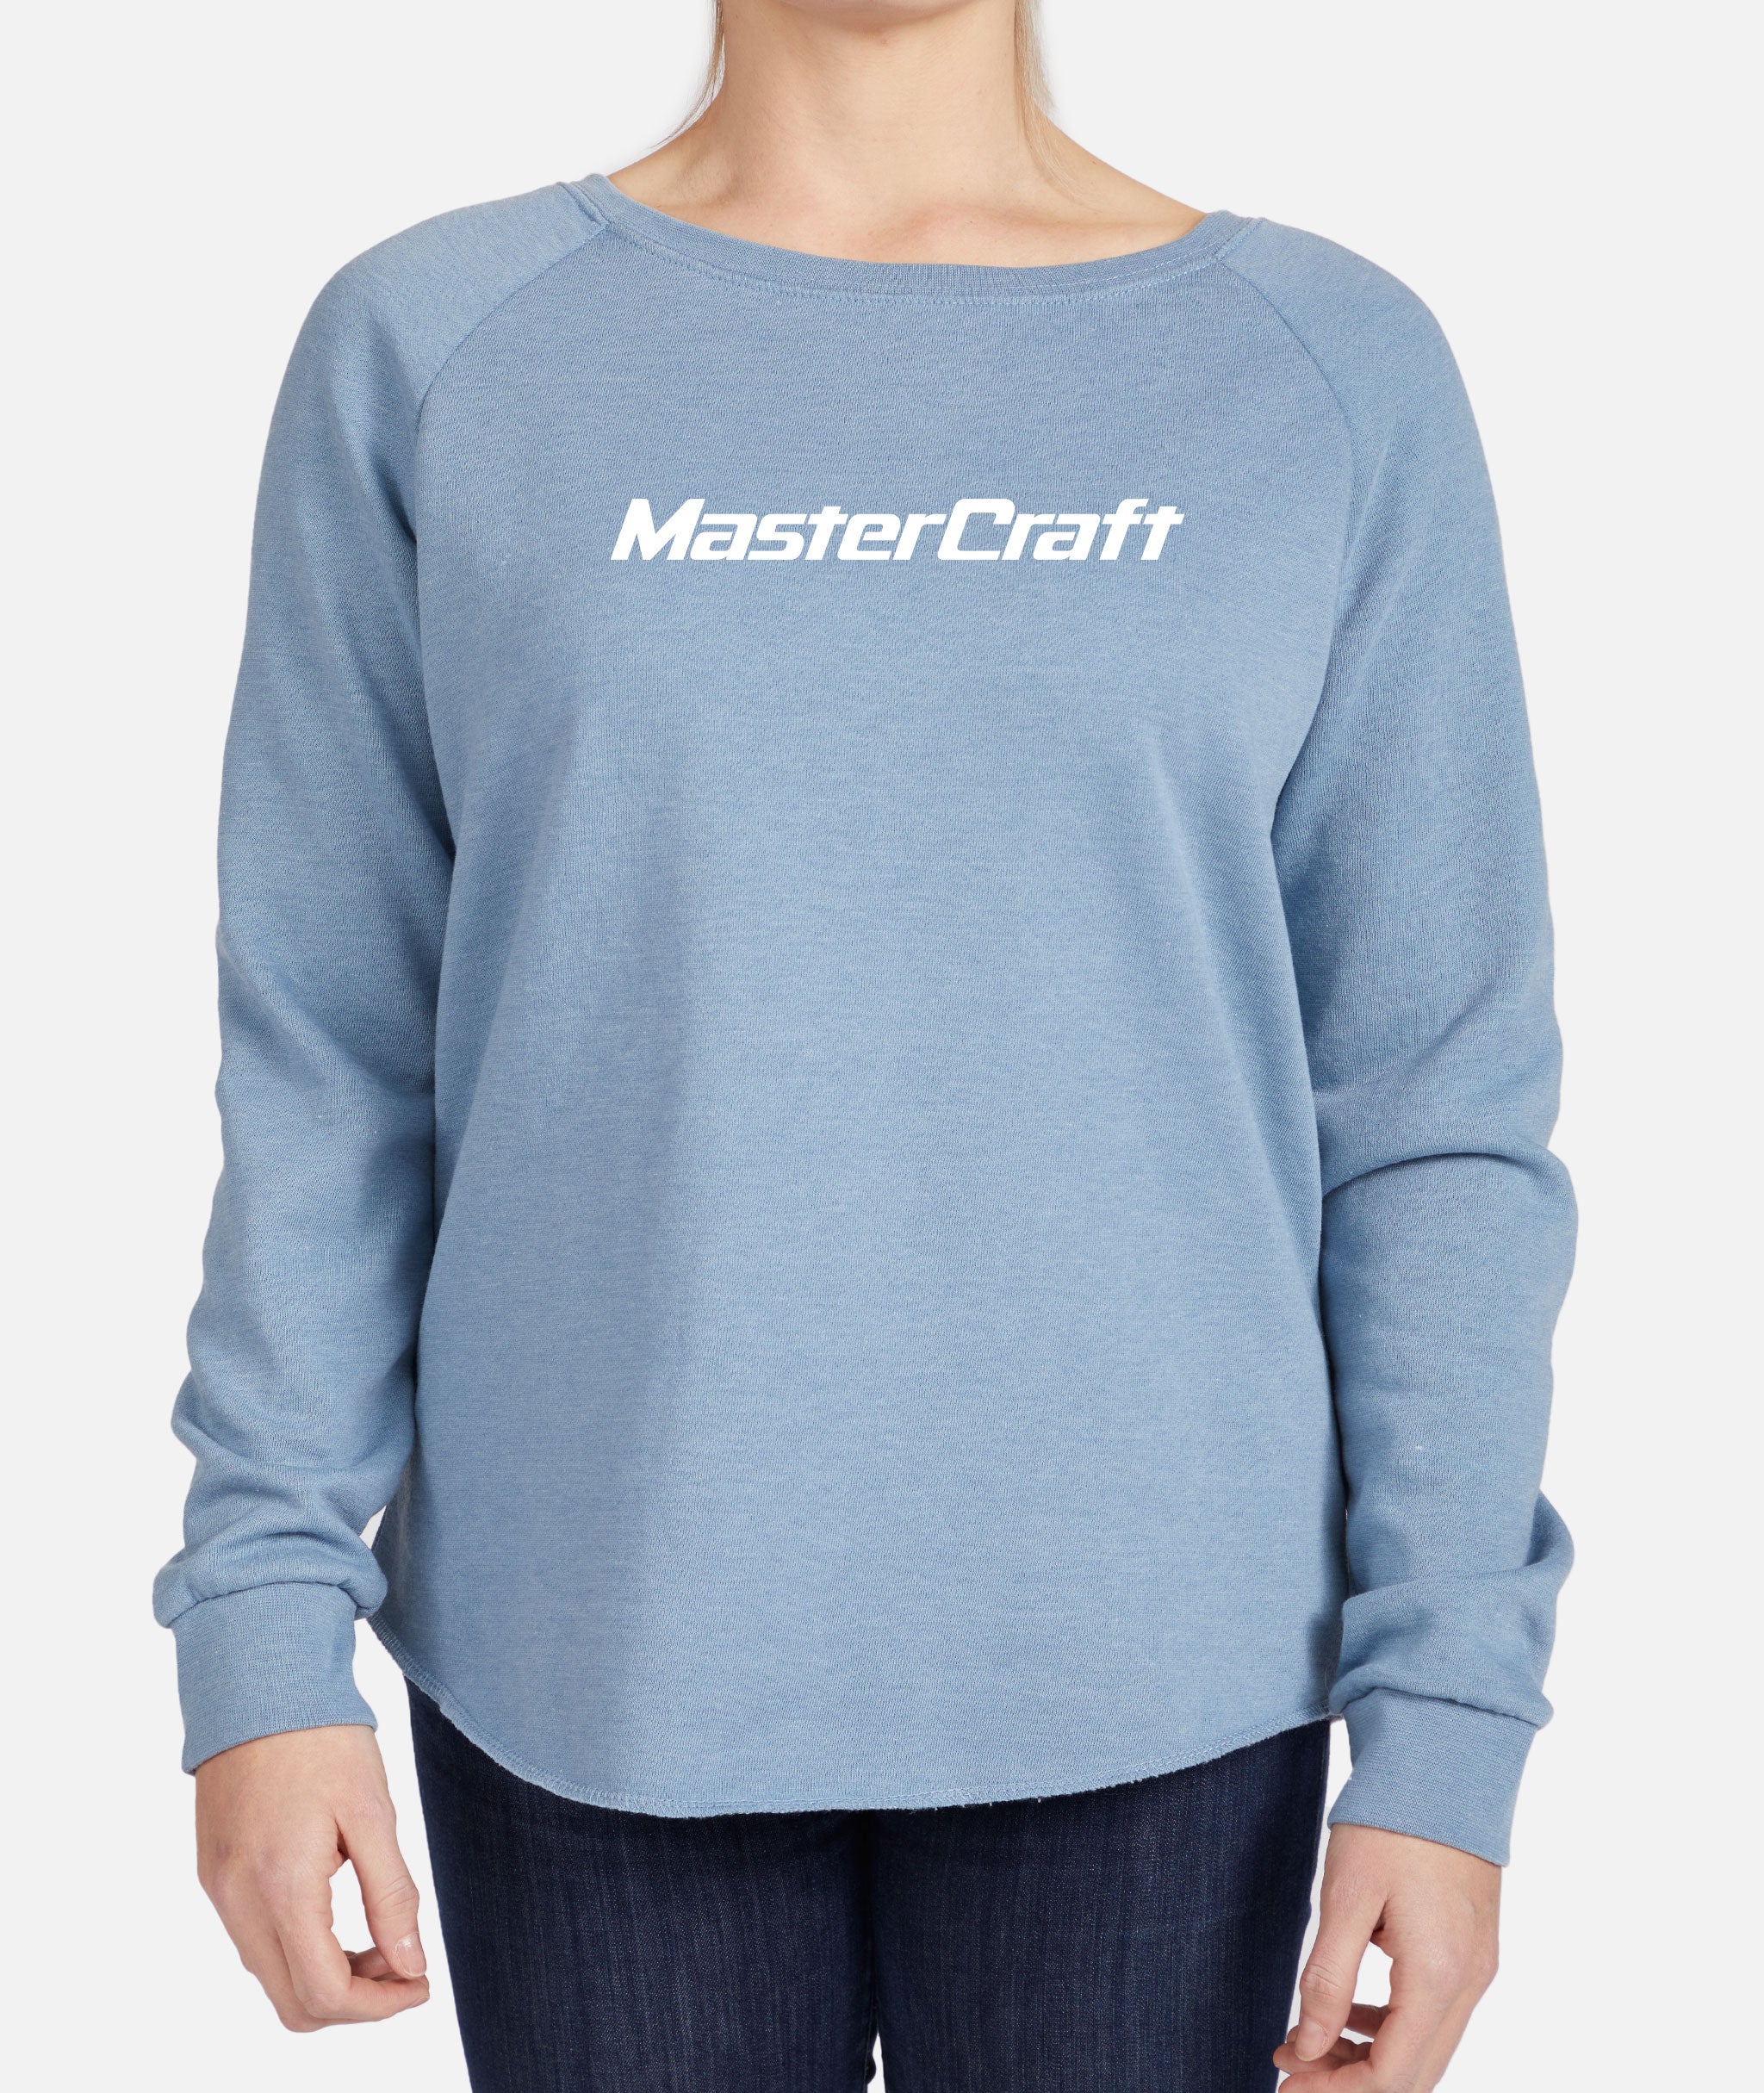 Women's Classic Crewneck Sweatshirt